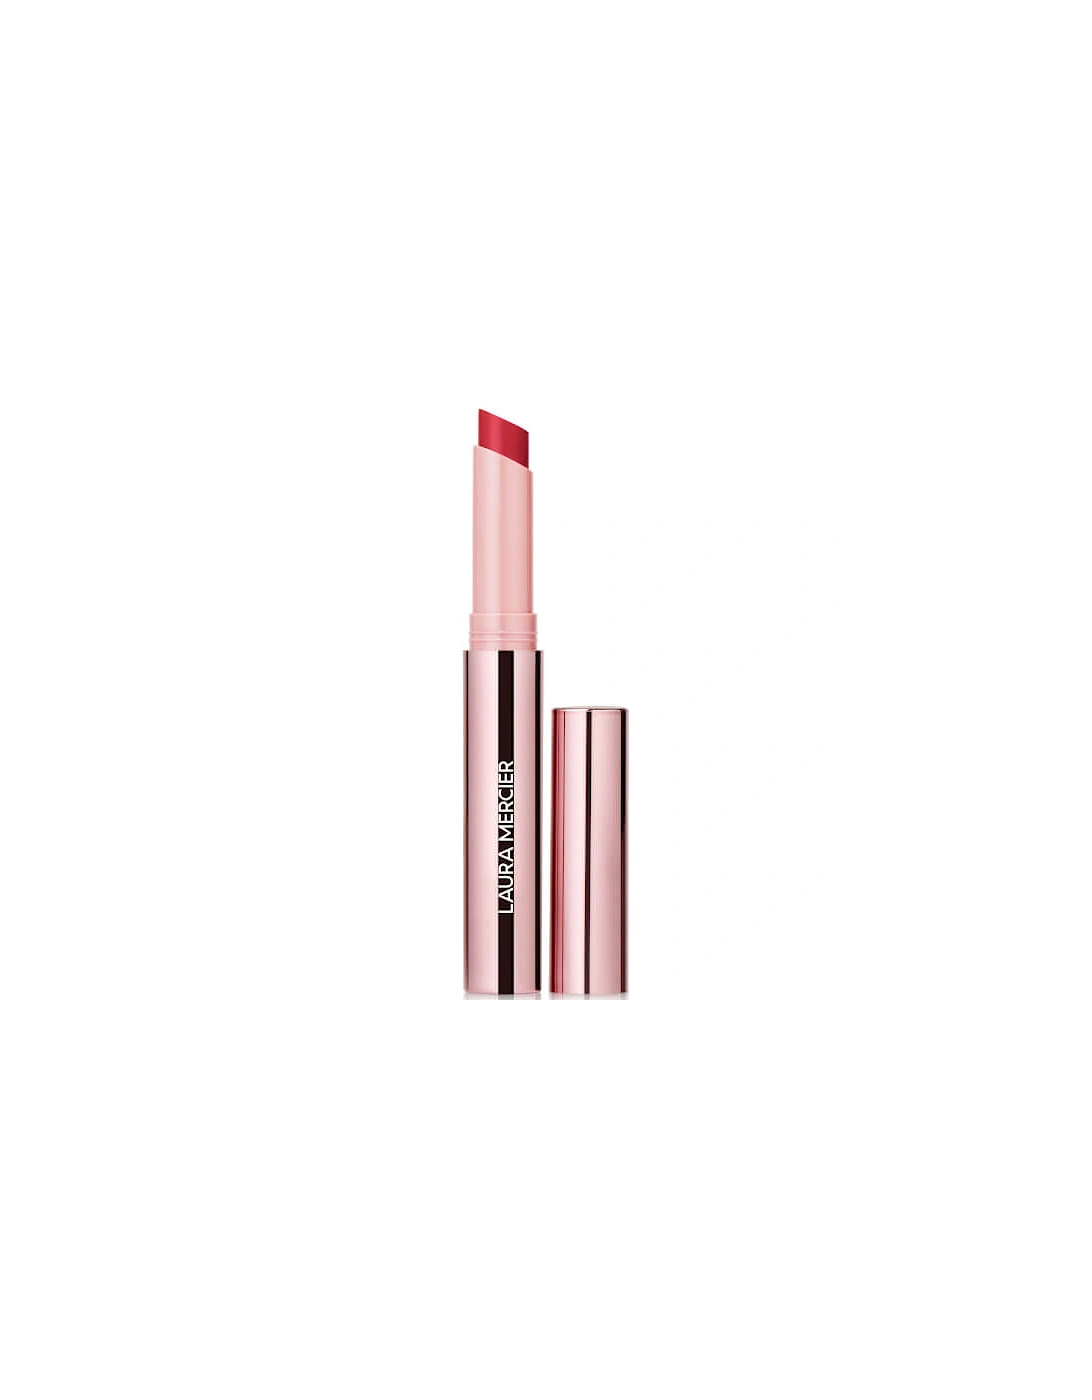 High Vibe Lip Colour Lipstick - 183 Dash, 2 of 1